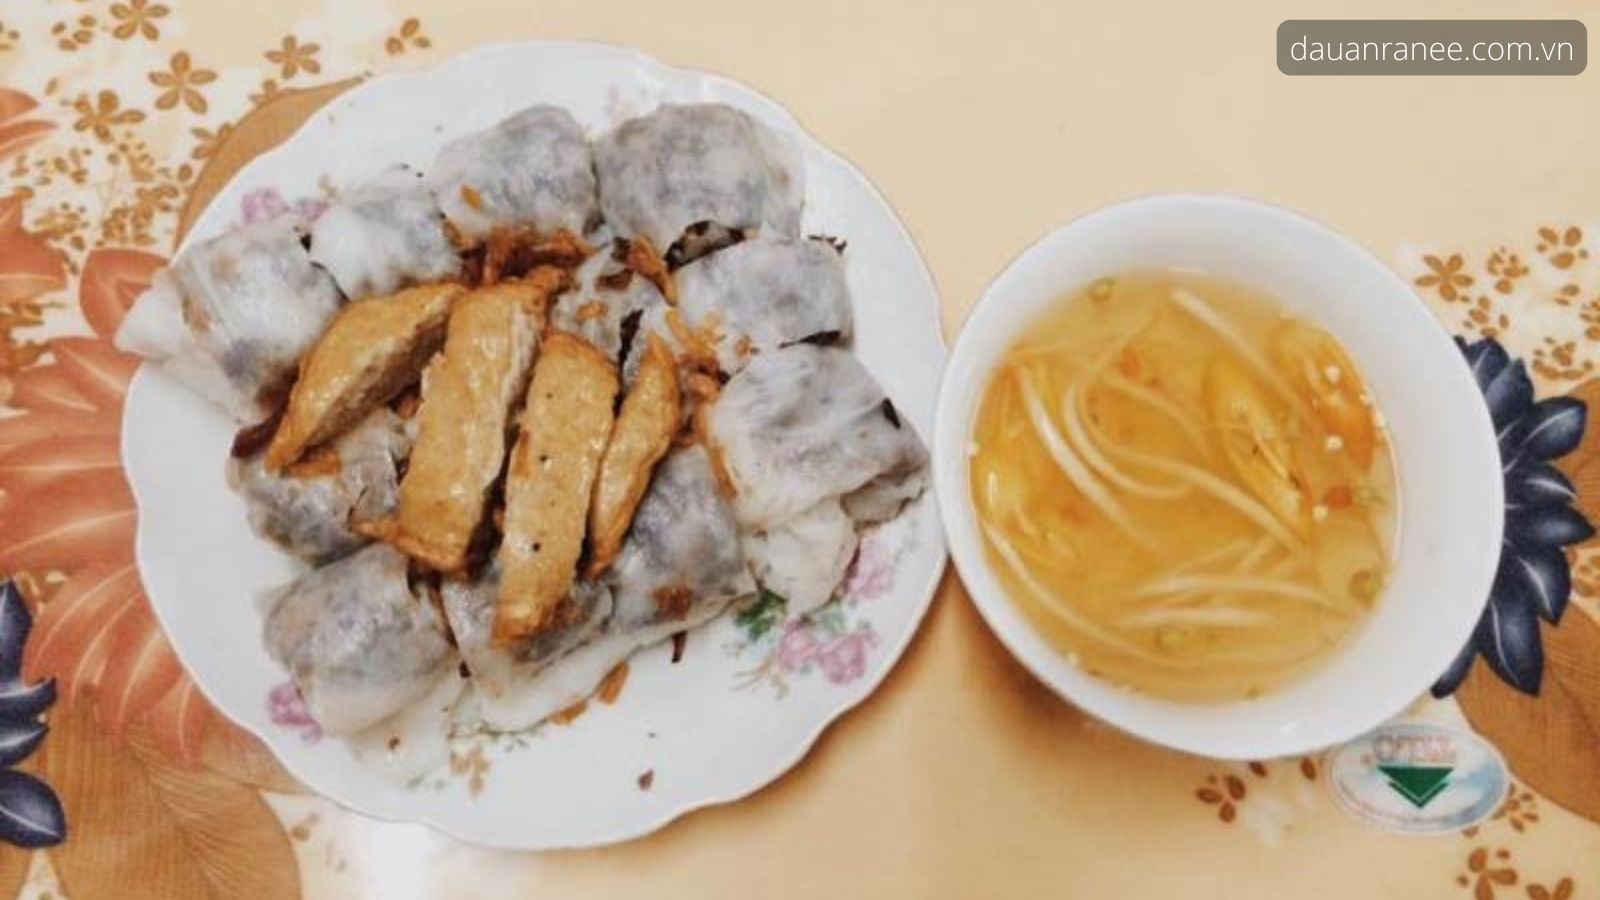 Bánh cuốn – đặc sản Hải Dương nên thử, thưởng thức những món ăn đặc sản ngon